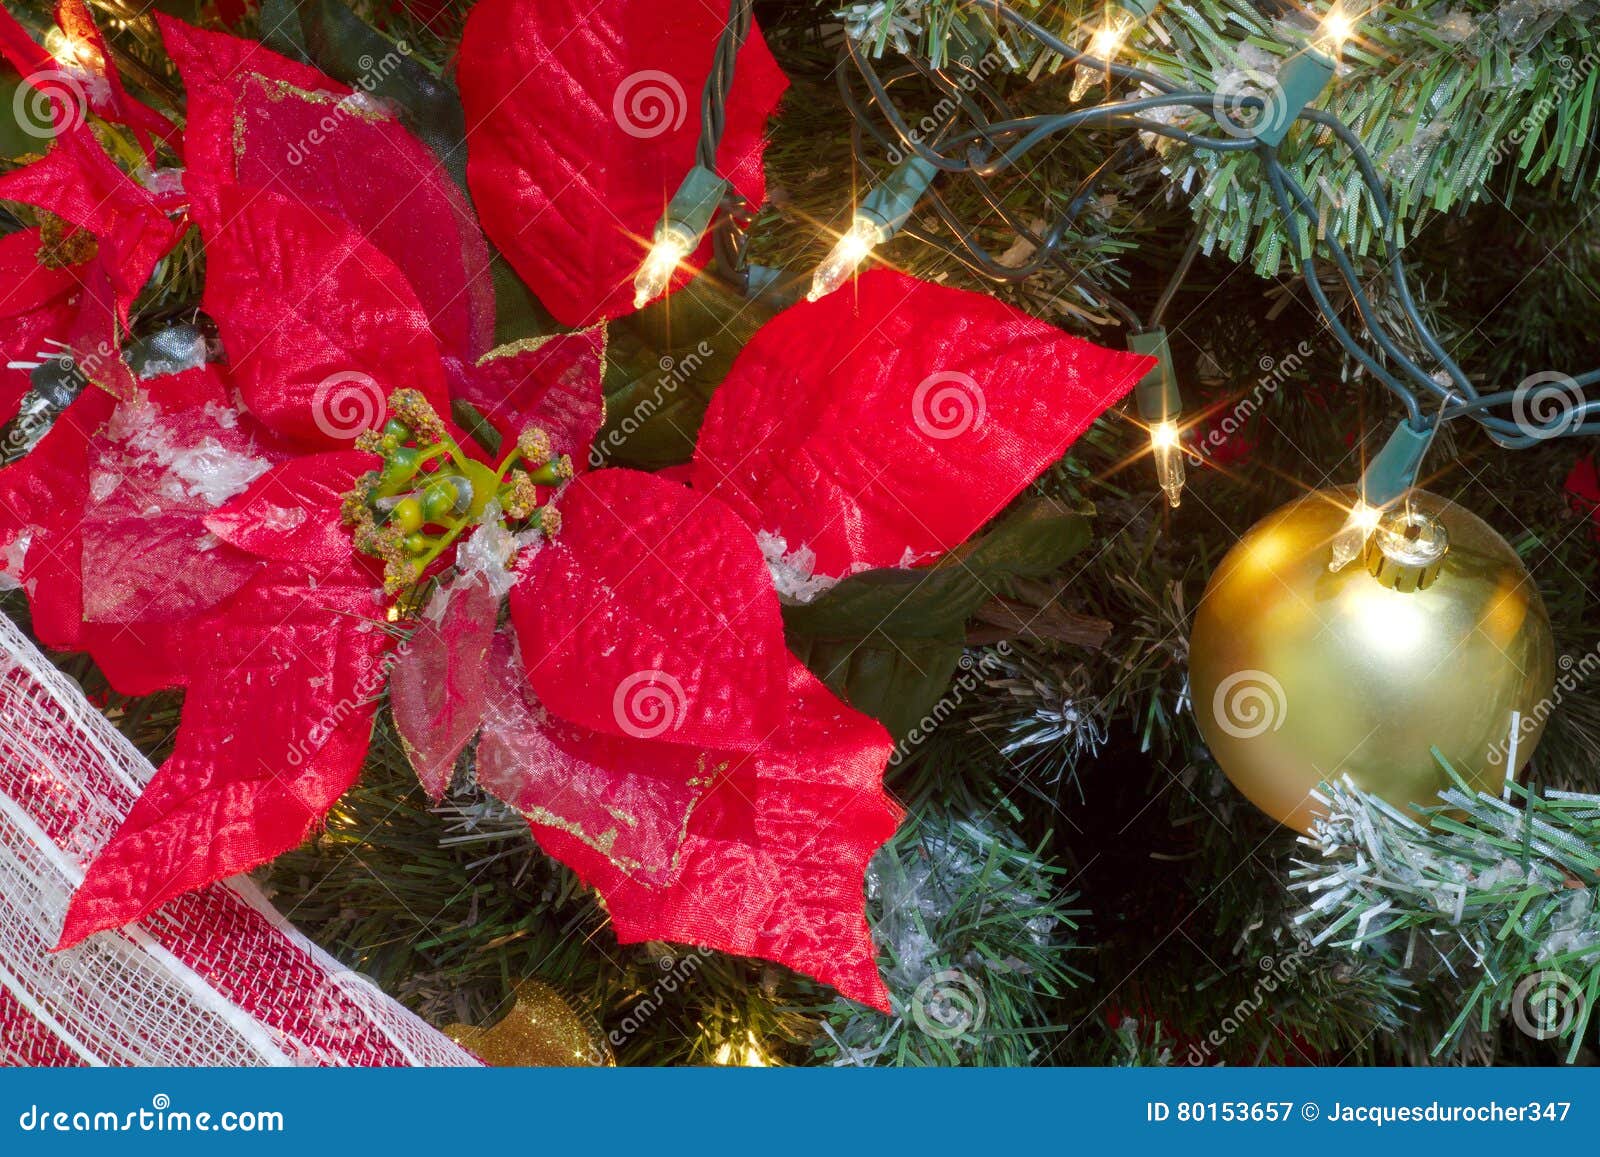 Stella Di Natale Decorazione.Grande Fiore Rosso Della Stella Di Natale Per La Decorazione Dell Albero Di Natale Immagine Stock Immagine Di Sfera Filiale 80153657